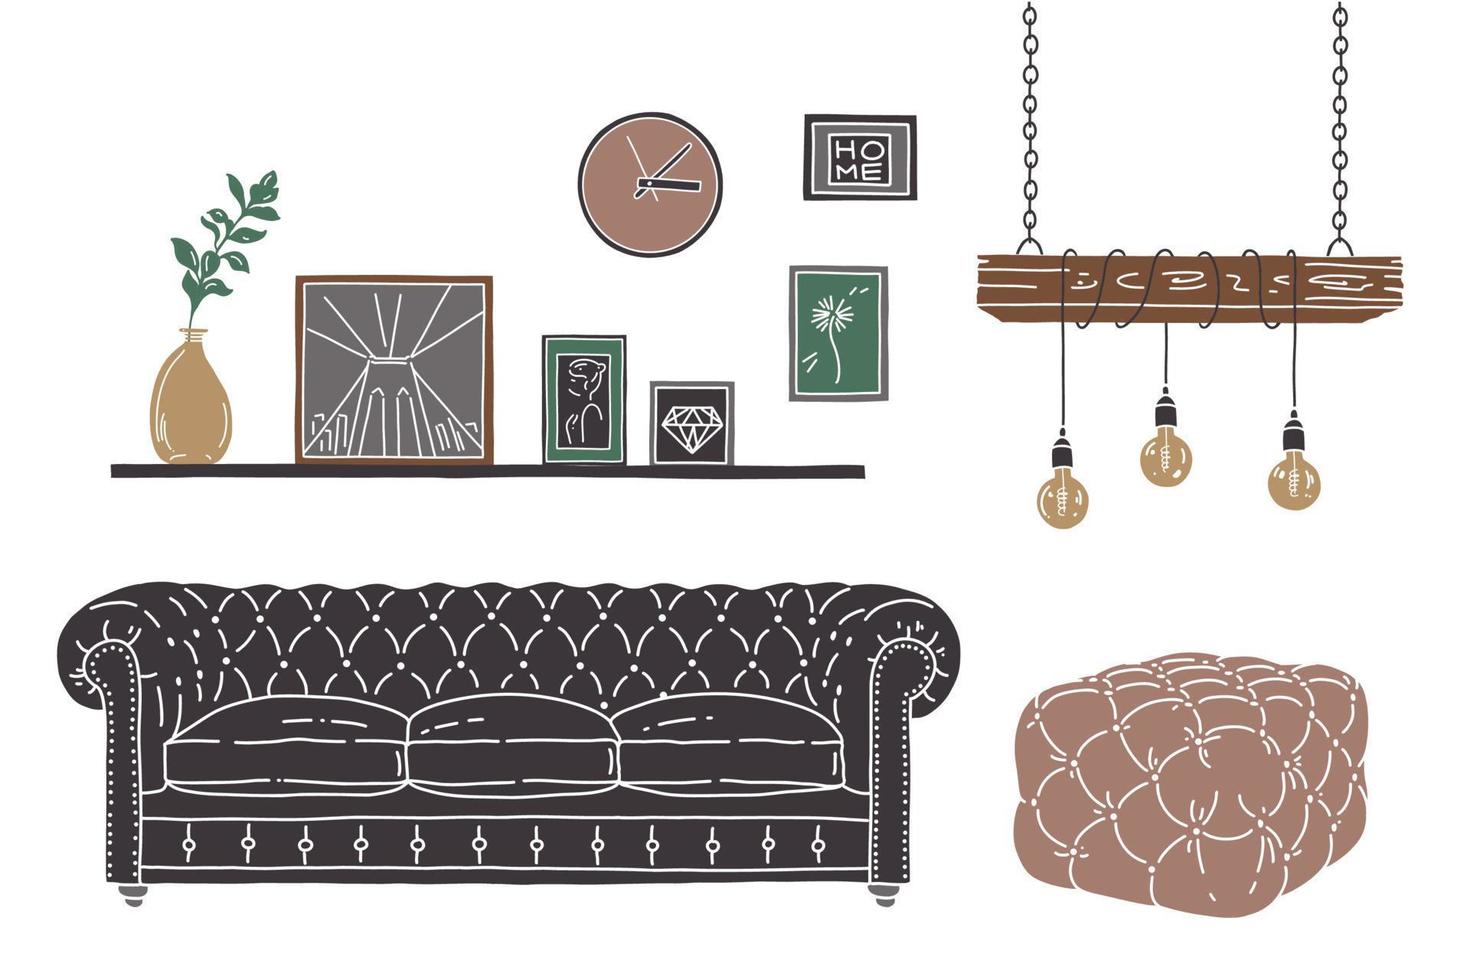 platt illustration av inre rum. vektor skiss med grå soffa, sittpuff, lampa, tavelram. inredning i loftstil.